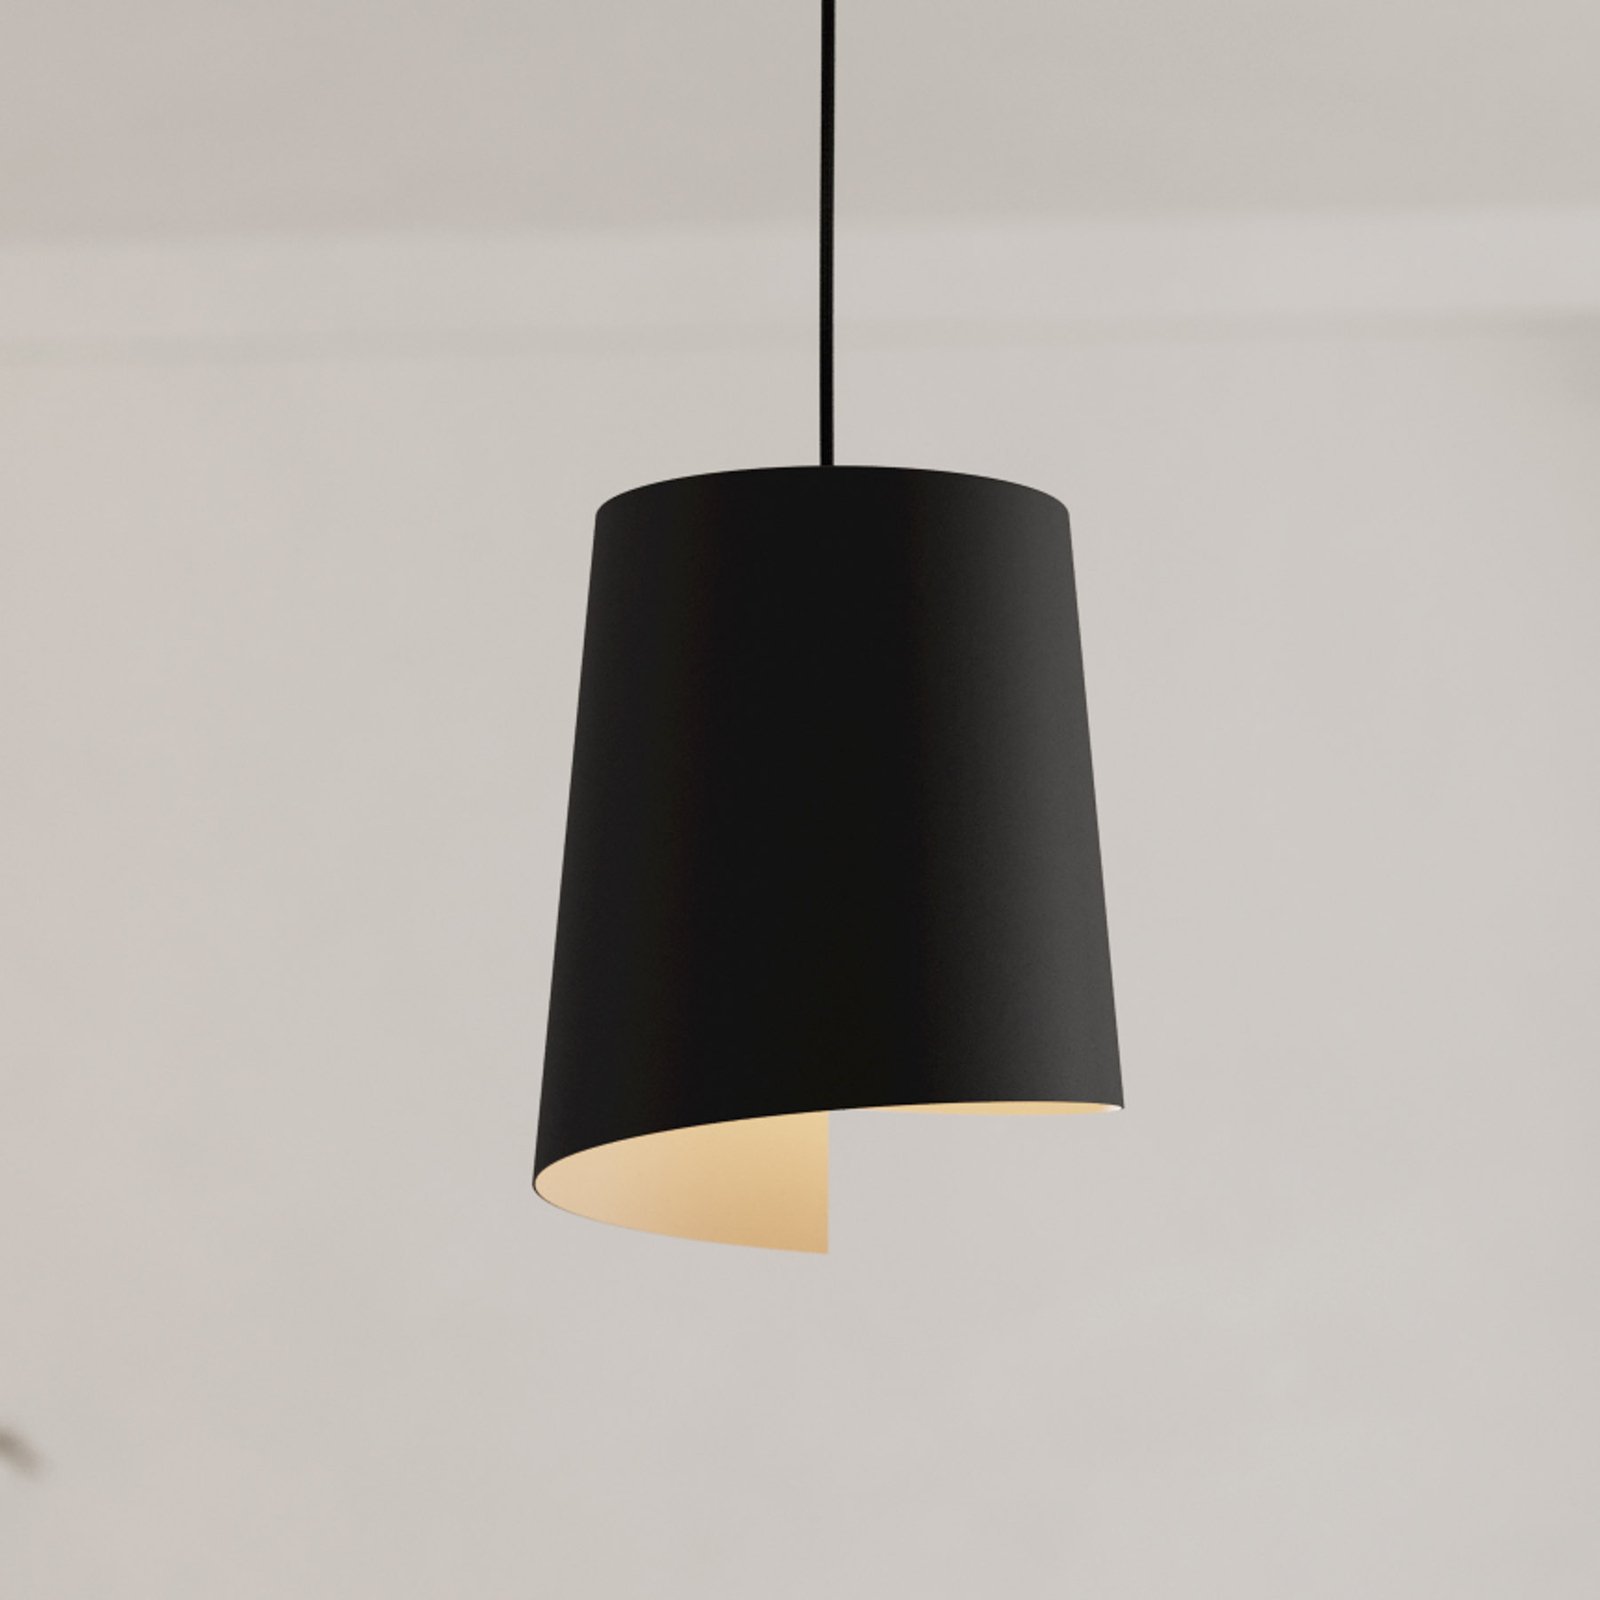 Bolivia pendant light black/sand colour, 1-bulb